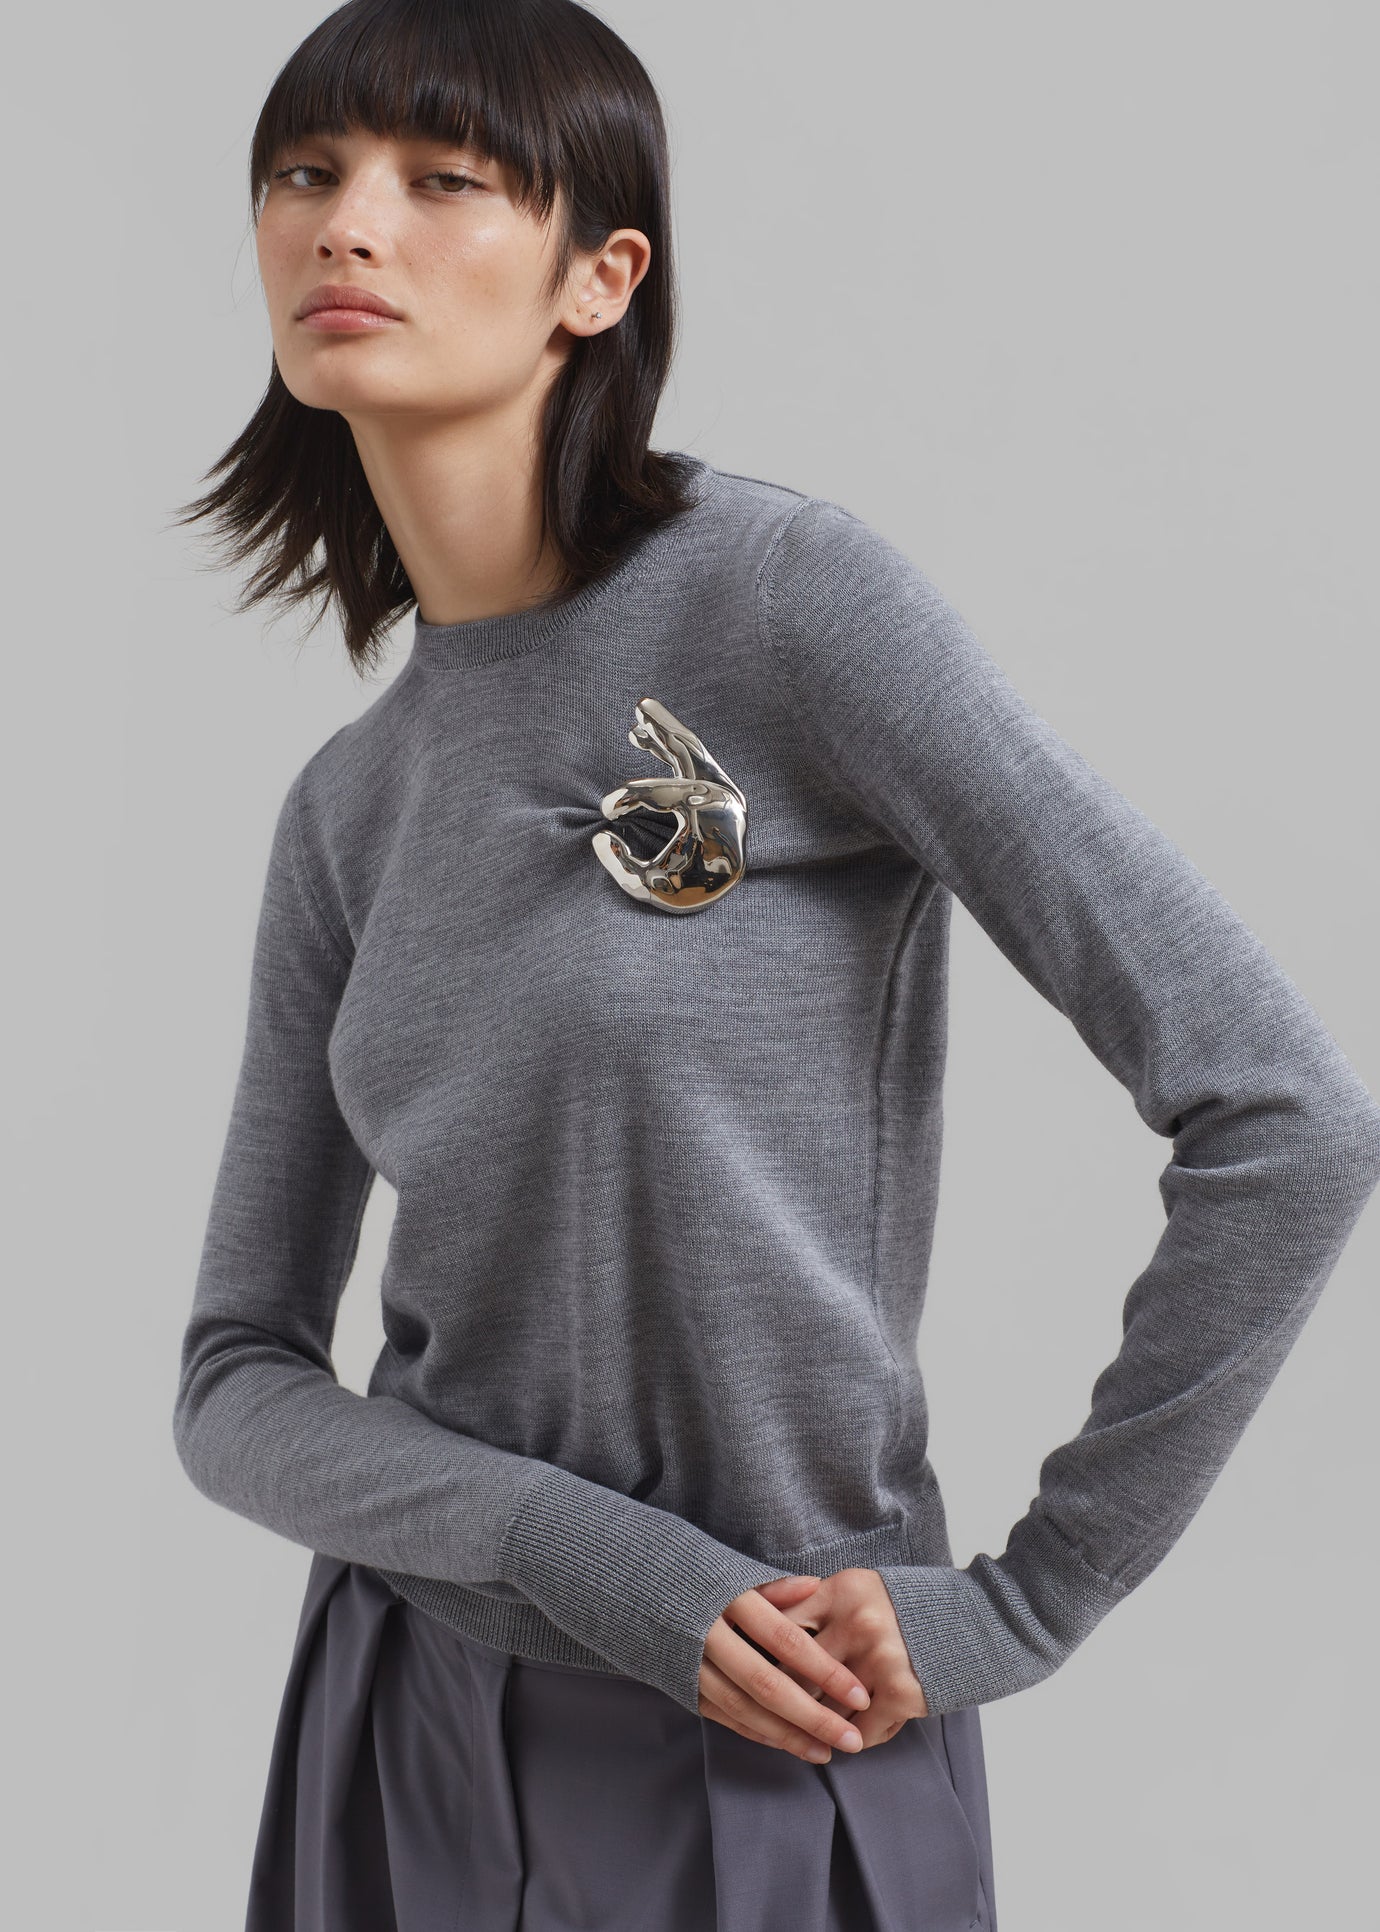 Coperni Emoji Sweater - Grey